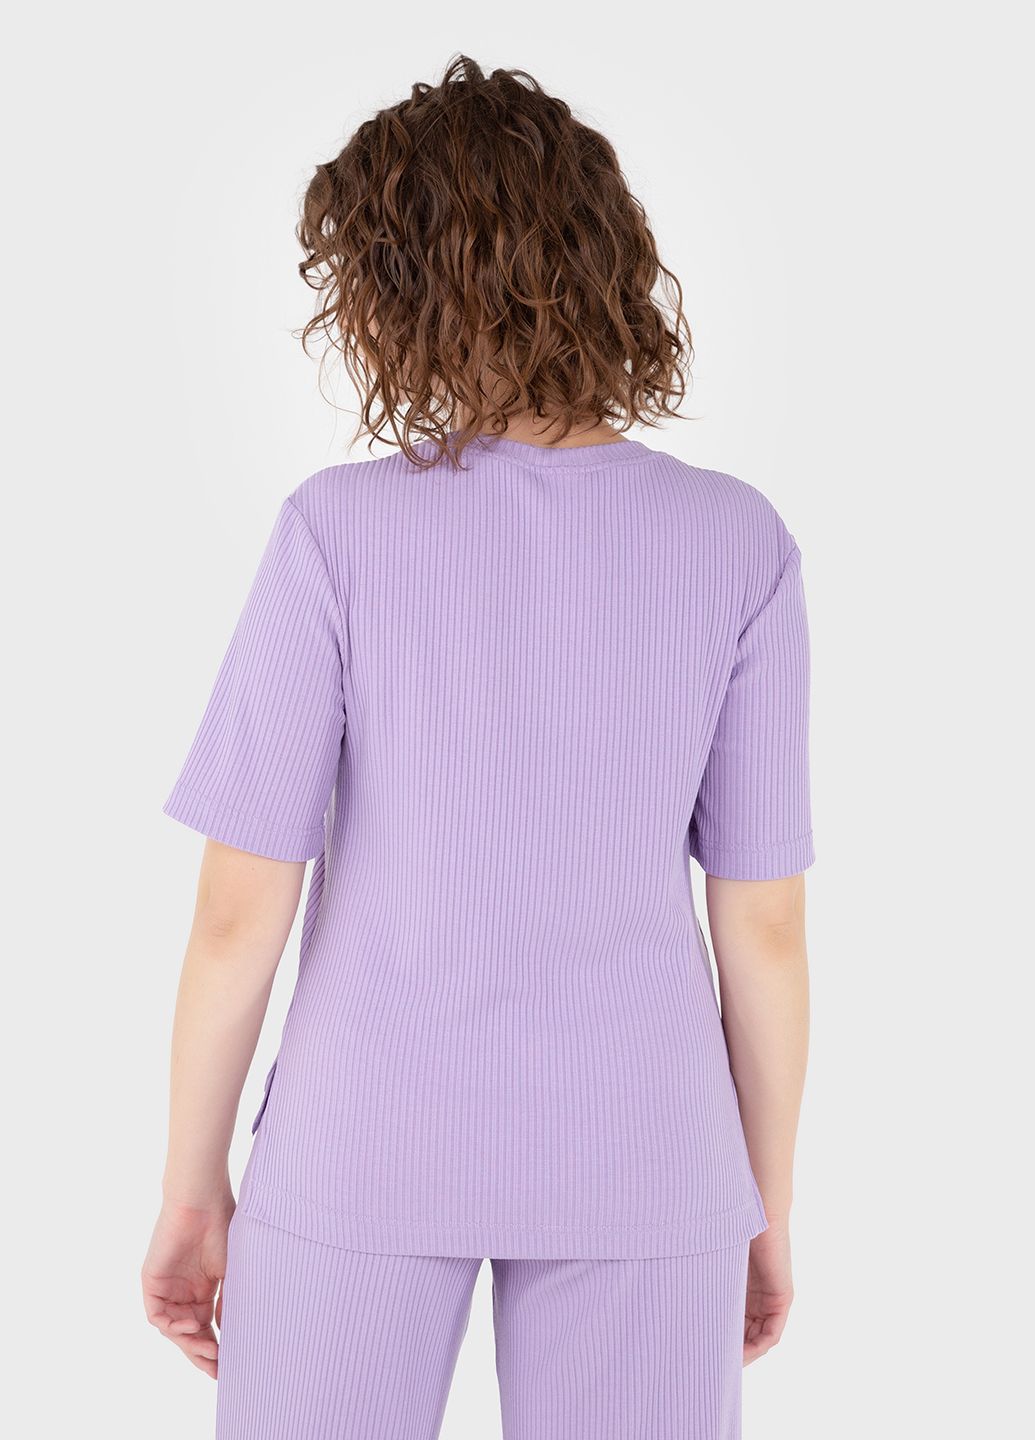 Купить Легкая футболка женская в рубчик Merlini Корунья 800000027 - Сиреневый, 42-44 в интернет-магазине